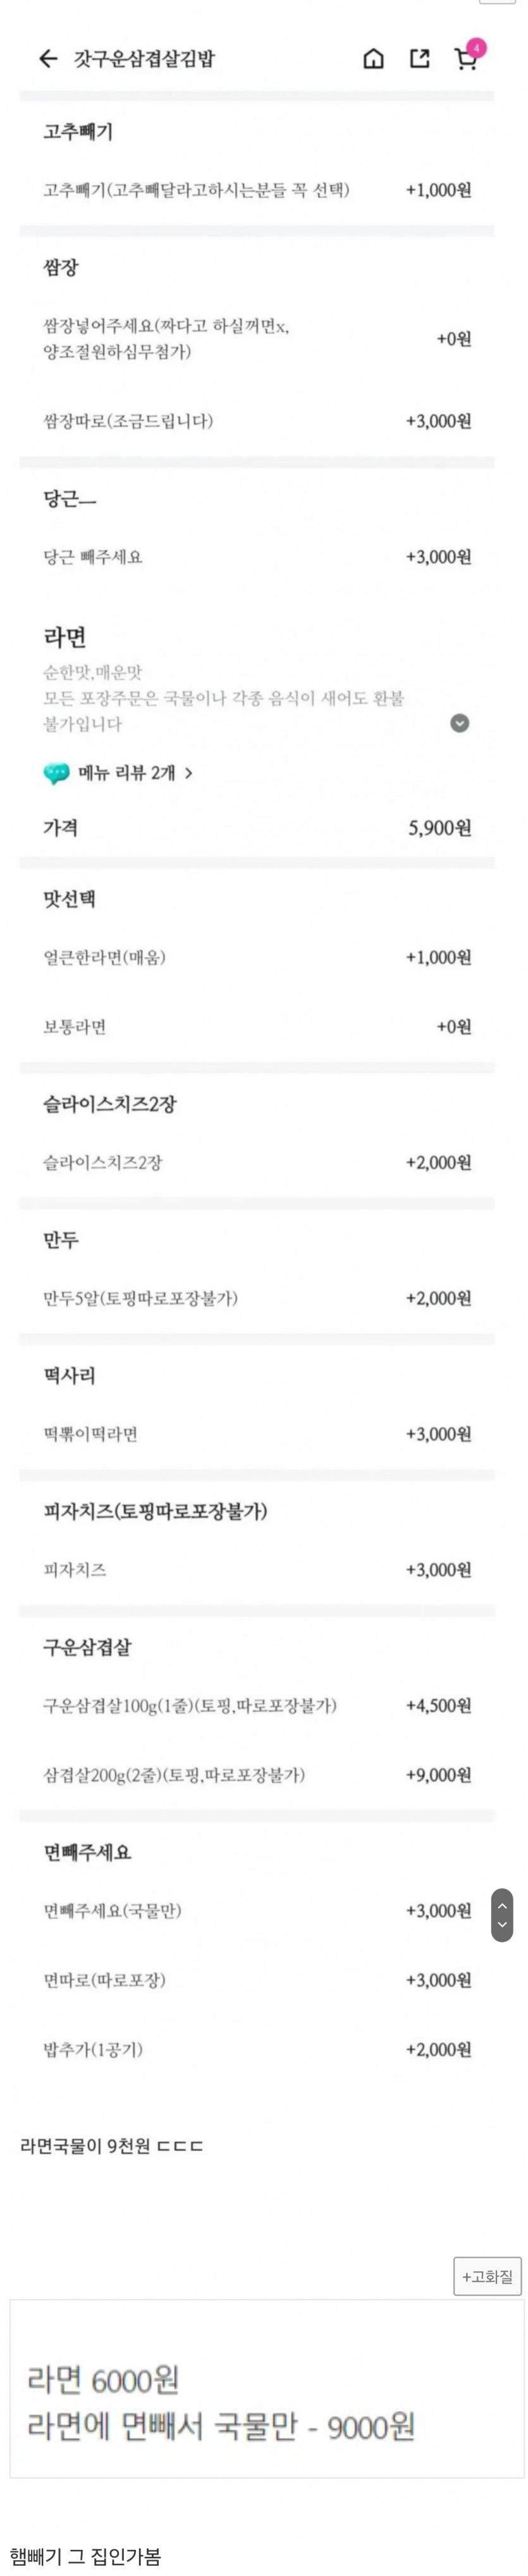 난리난 김밥집 라면에 면빼기 추가금(0)